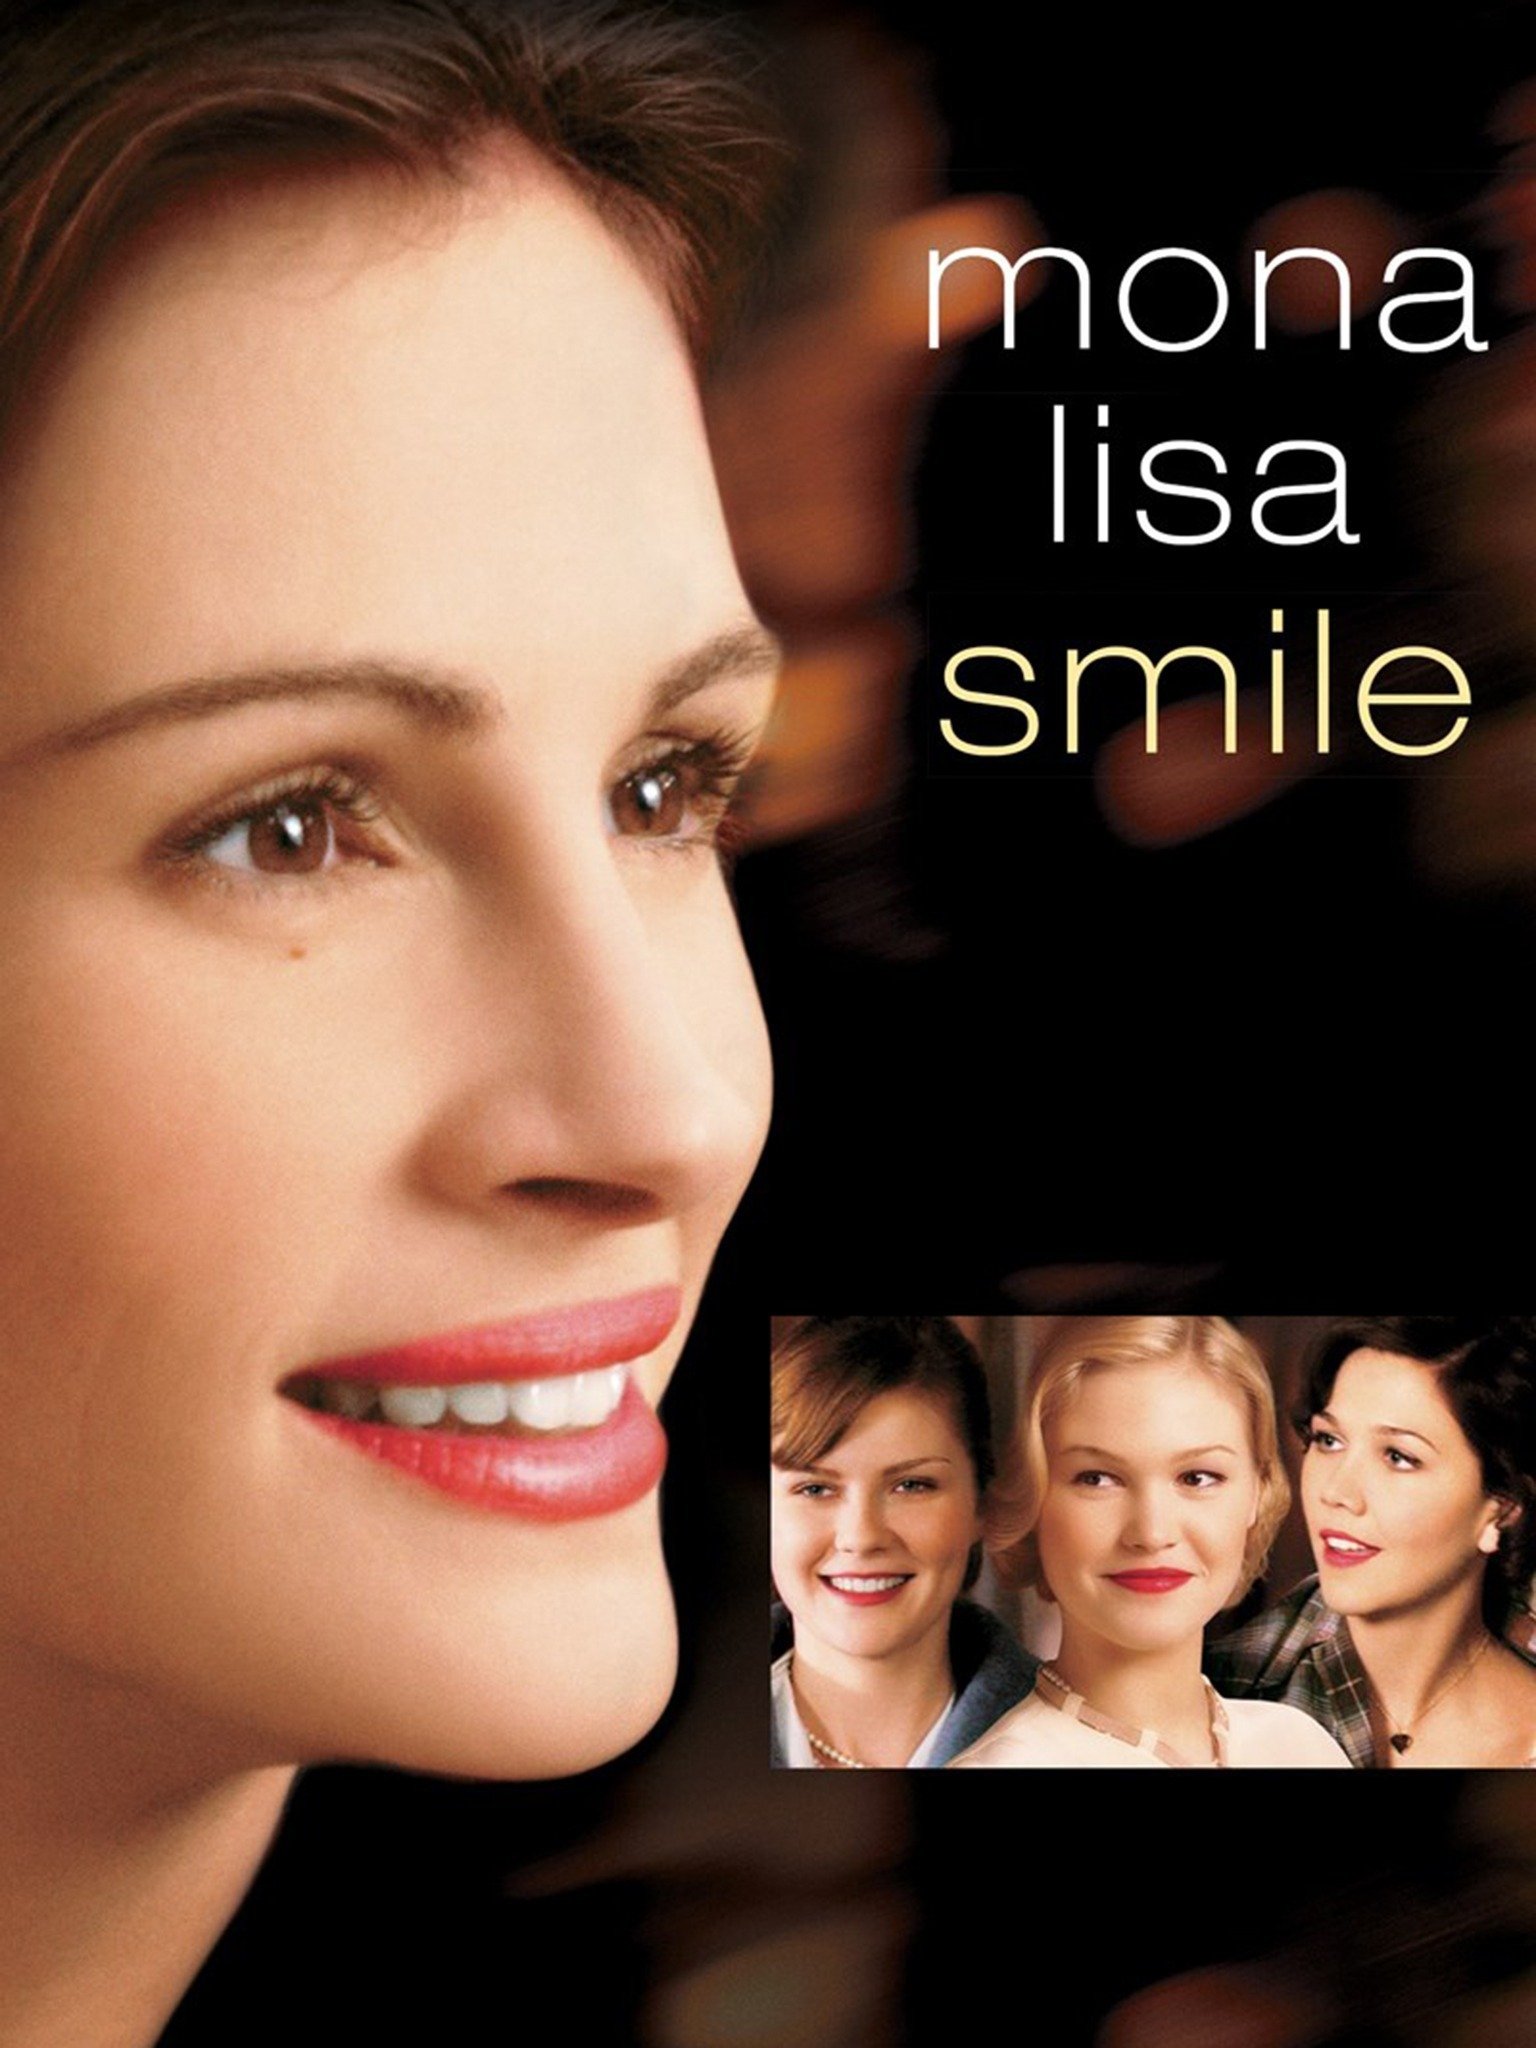 Mona Lisa Smile (2003) - Rotten Tomatoes - La Sonrisa De Mona Lisa 2003